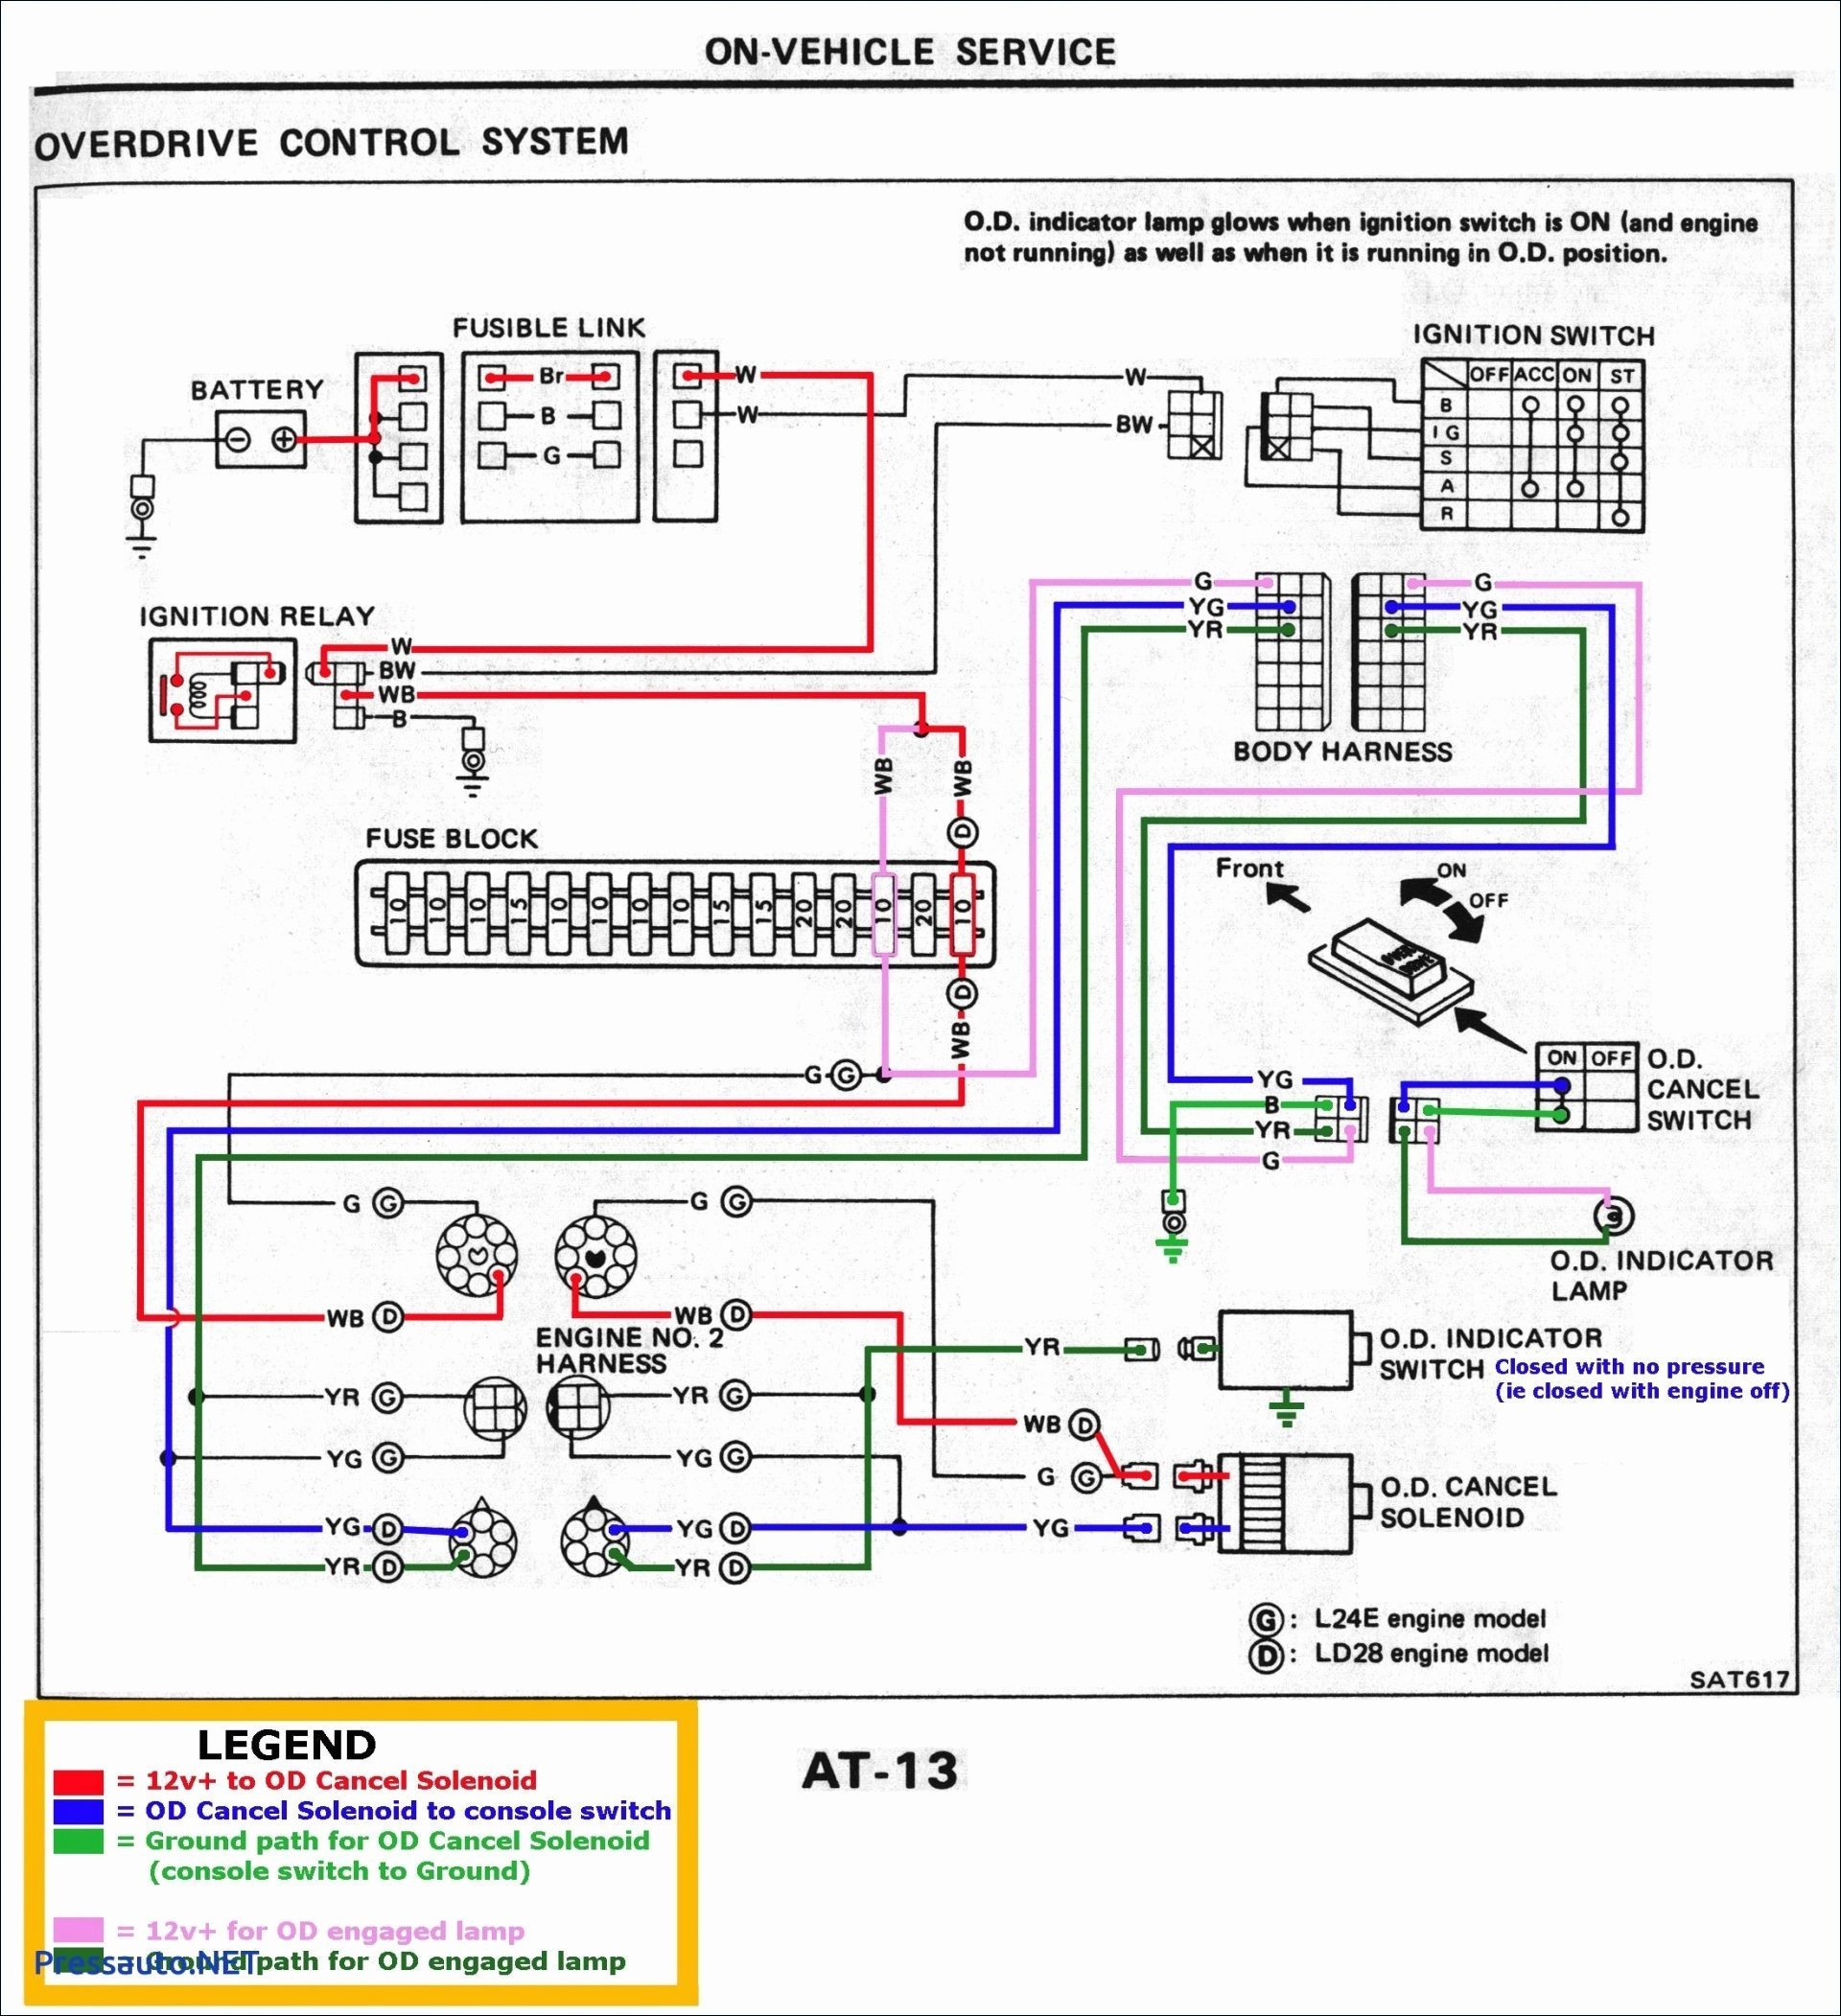 Genesis series Overview Source · Motorola Alternator Wiring Diagram John Deere Fresh Volvo 122 Alternator Wiring Diagram Diy Wiring Diagrams